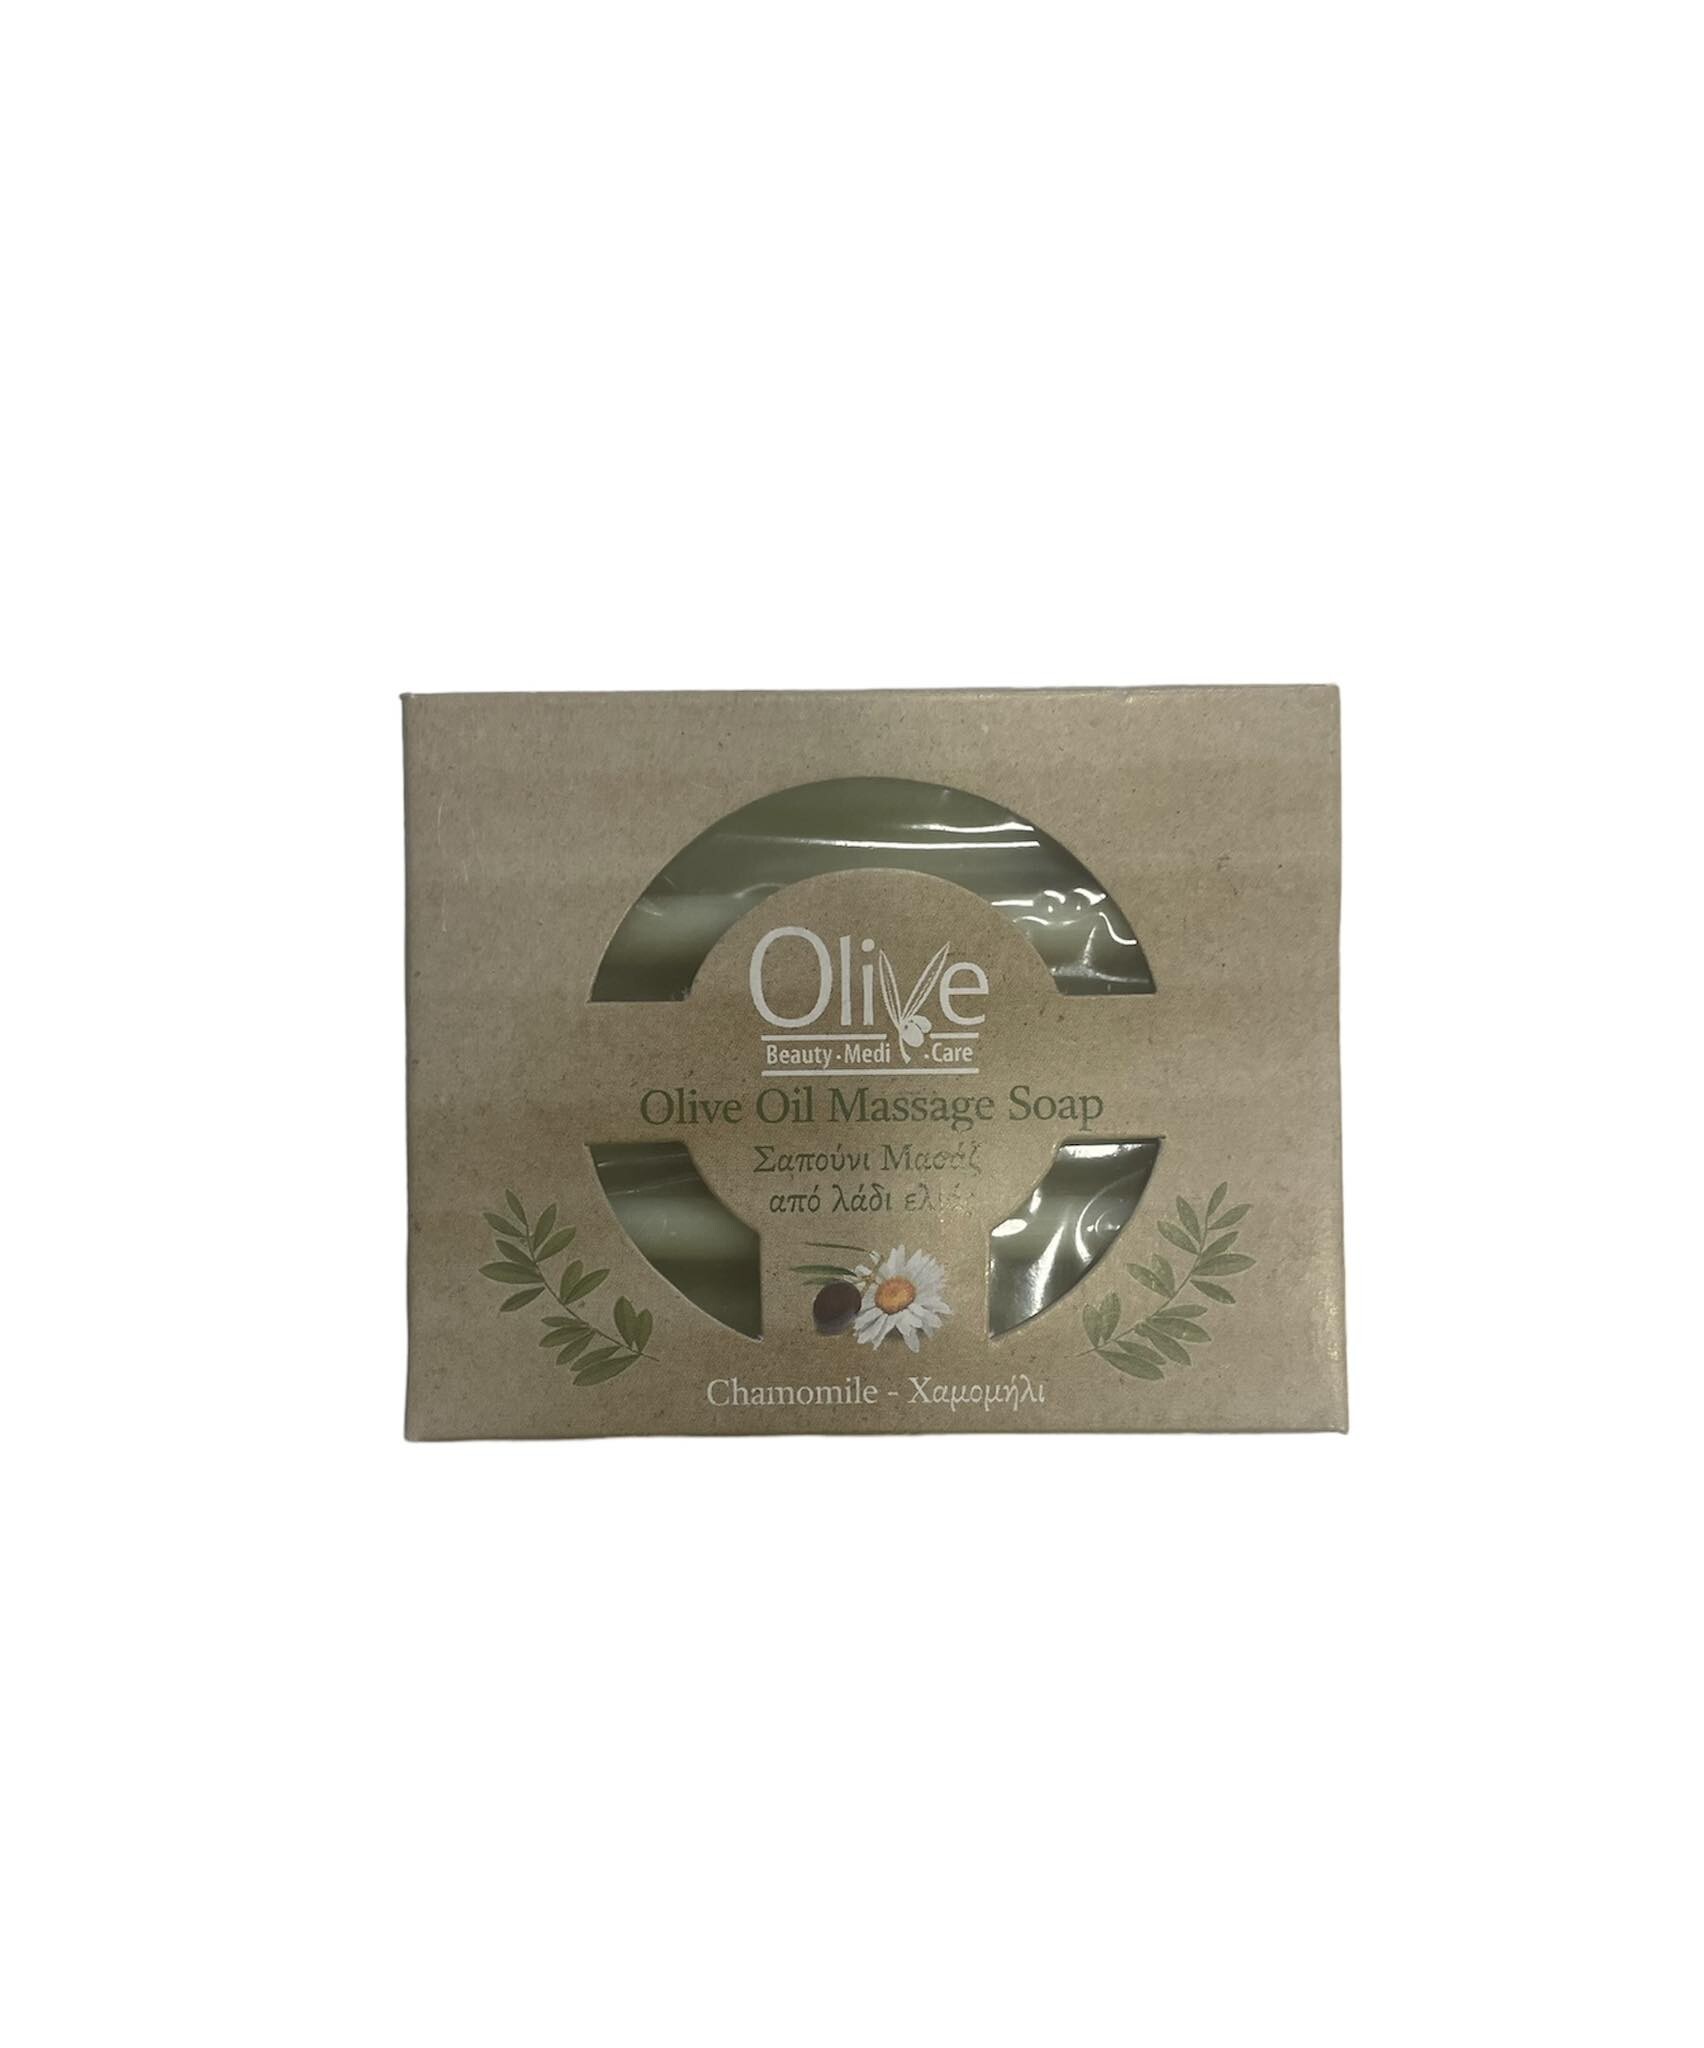 Olive Σαπούνι Μασάζ με Χαμομήλι / Olive Massage Soap with Chamomile